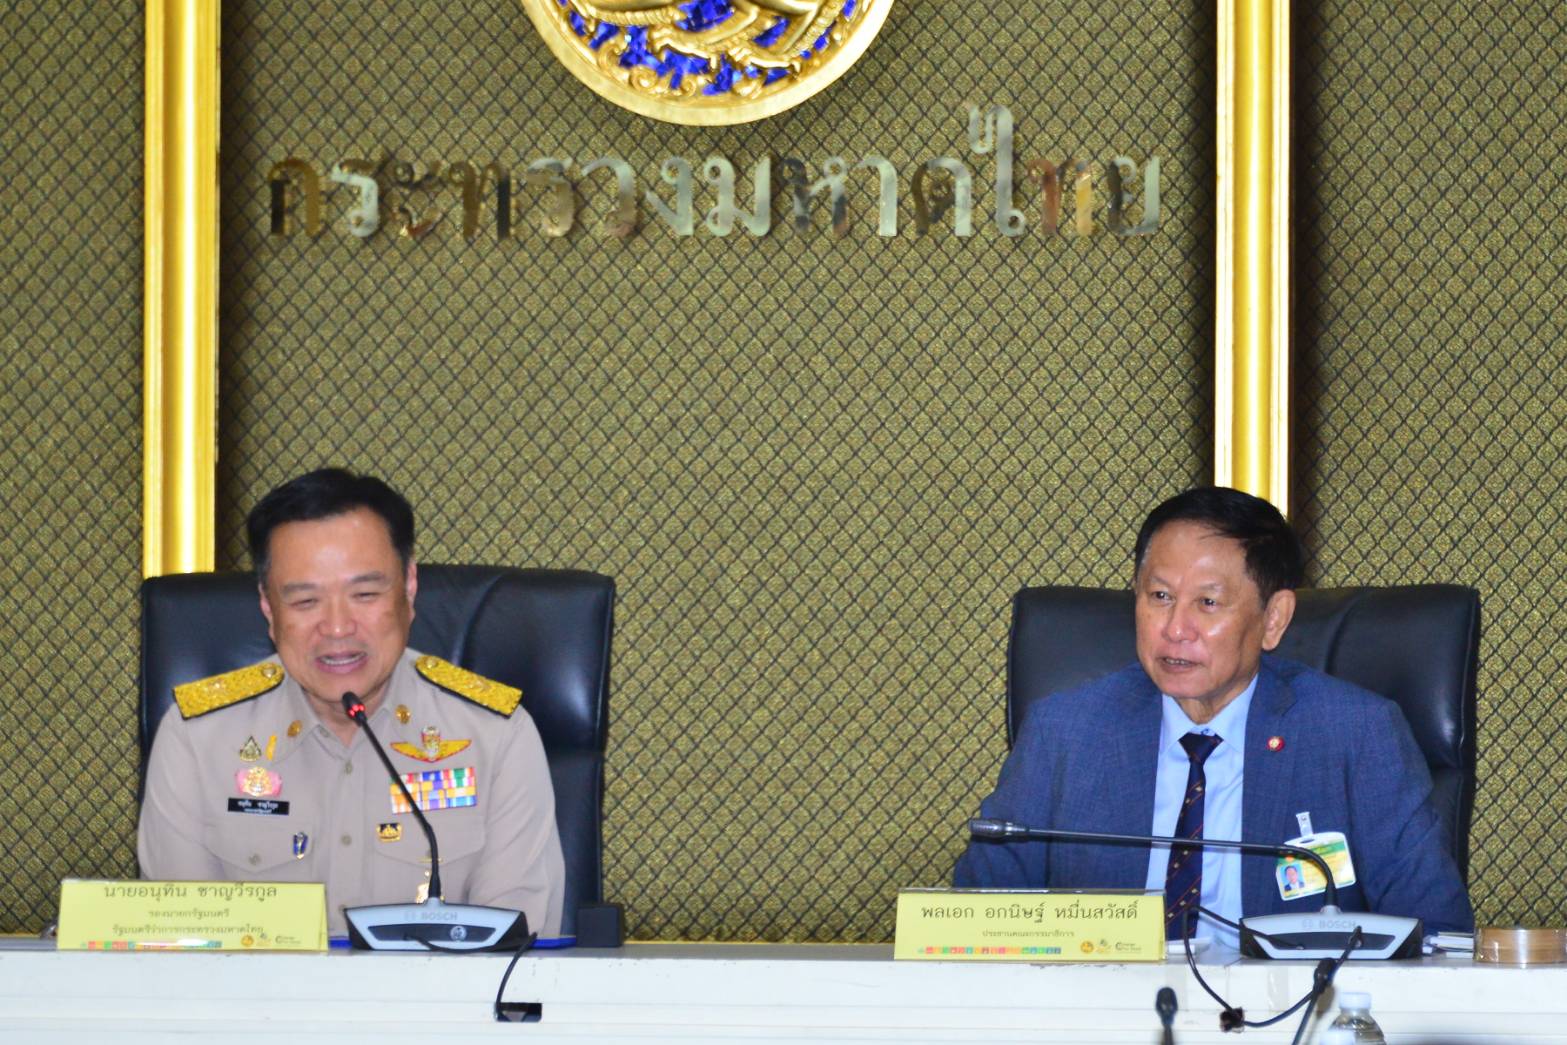 คณะกรรมาธิการการบริหารราชการแผ่นดิน ประชุมหารือแลกเปลี่ยนความคิดเห็นร่วมกับนายอนุทิน  ชาญวีรกูล รัฐมนตรีว่าการกระทรวงมหาดไทย นายชำนาญวิทย์  เตรัตน์ รองปลัดกระทรวงมหาดไทย นายอรรษิษฐ์  สัมพันธรัตน์ อธิบดีกรมการปกครอง นายพงศ์รัตน์  ภิรมย์รัตน์ อธิบดีกรมโยธาธ